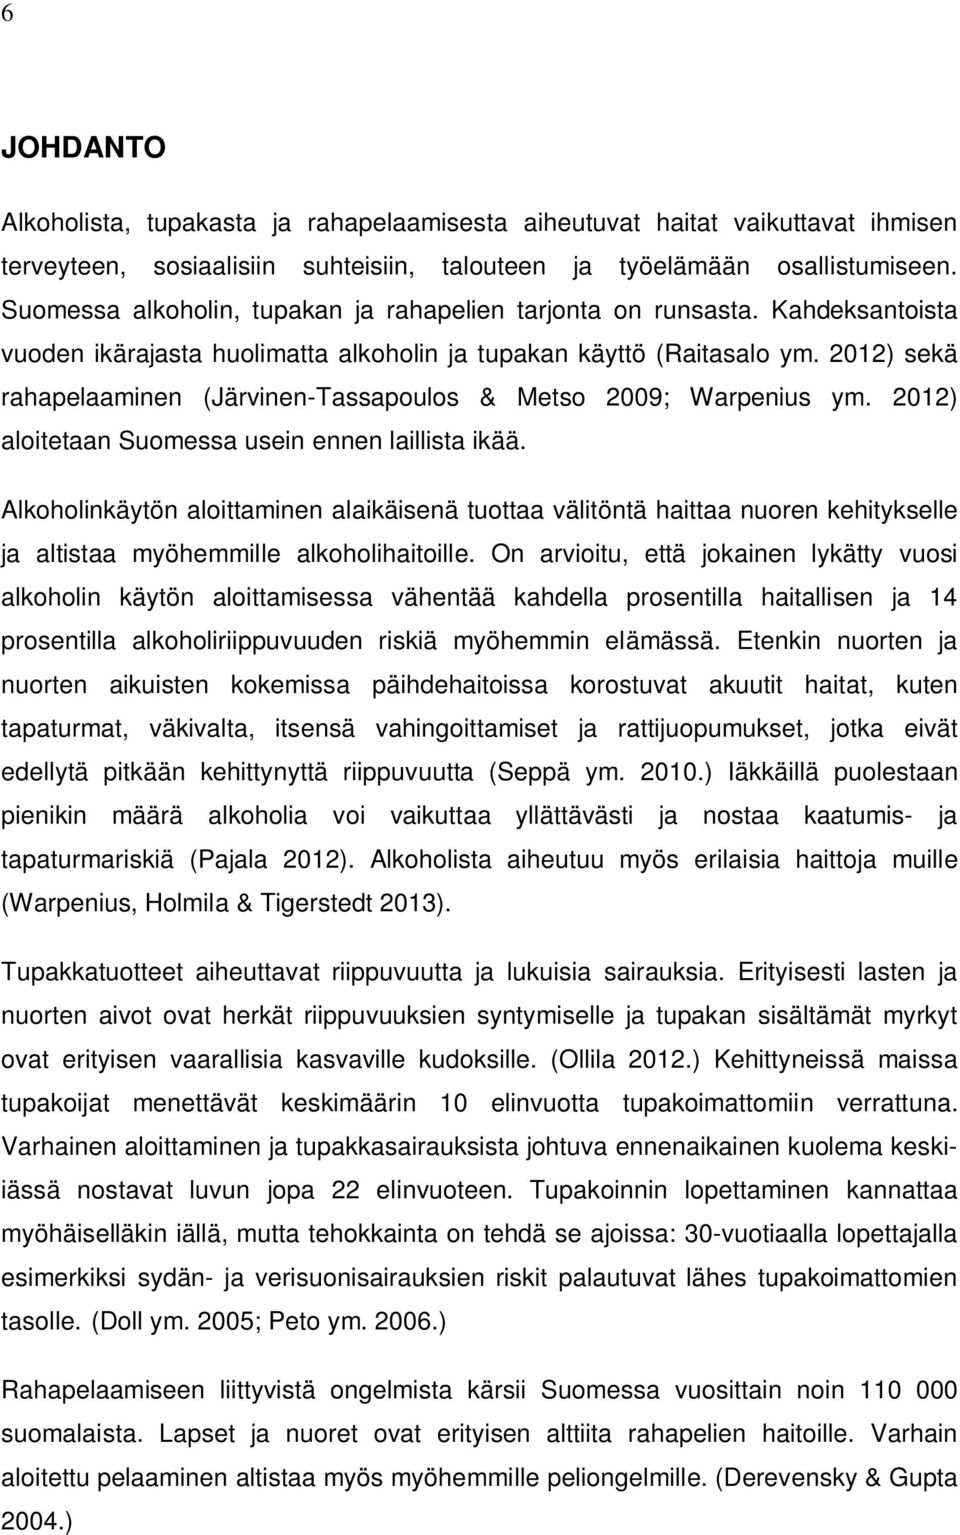 2012) sekä rahapelaaminen (Järvinen-Tassapoulos & Metso 2009; Warpenius ym. 2012) aloitetaan Suomessa usein ennen laillista ikää.